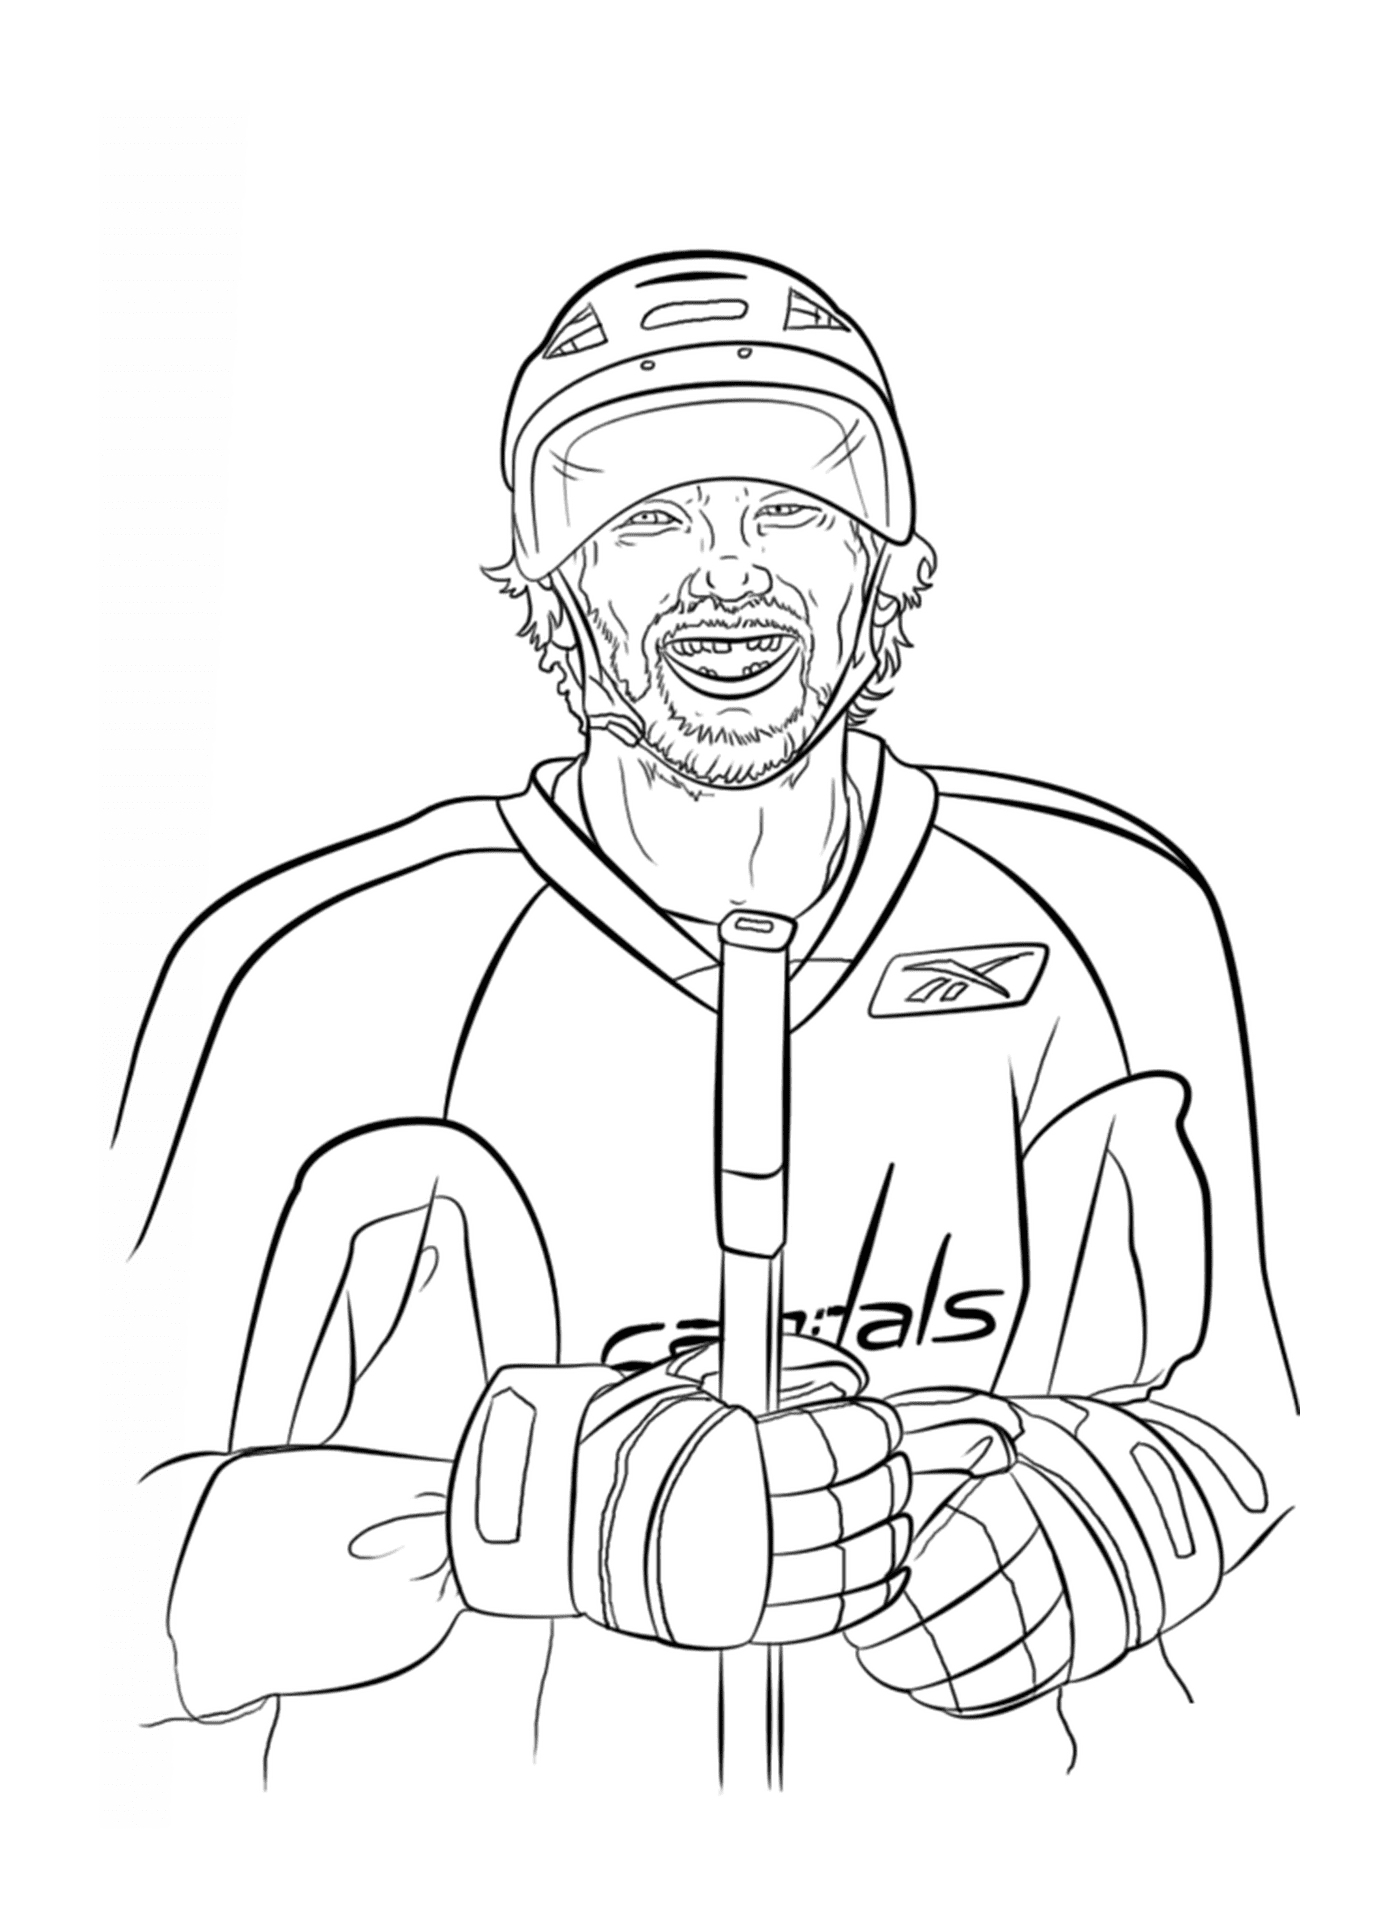   Alex Ovechkin, joueur de hockey 